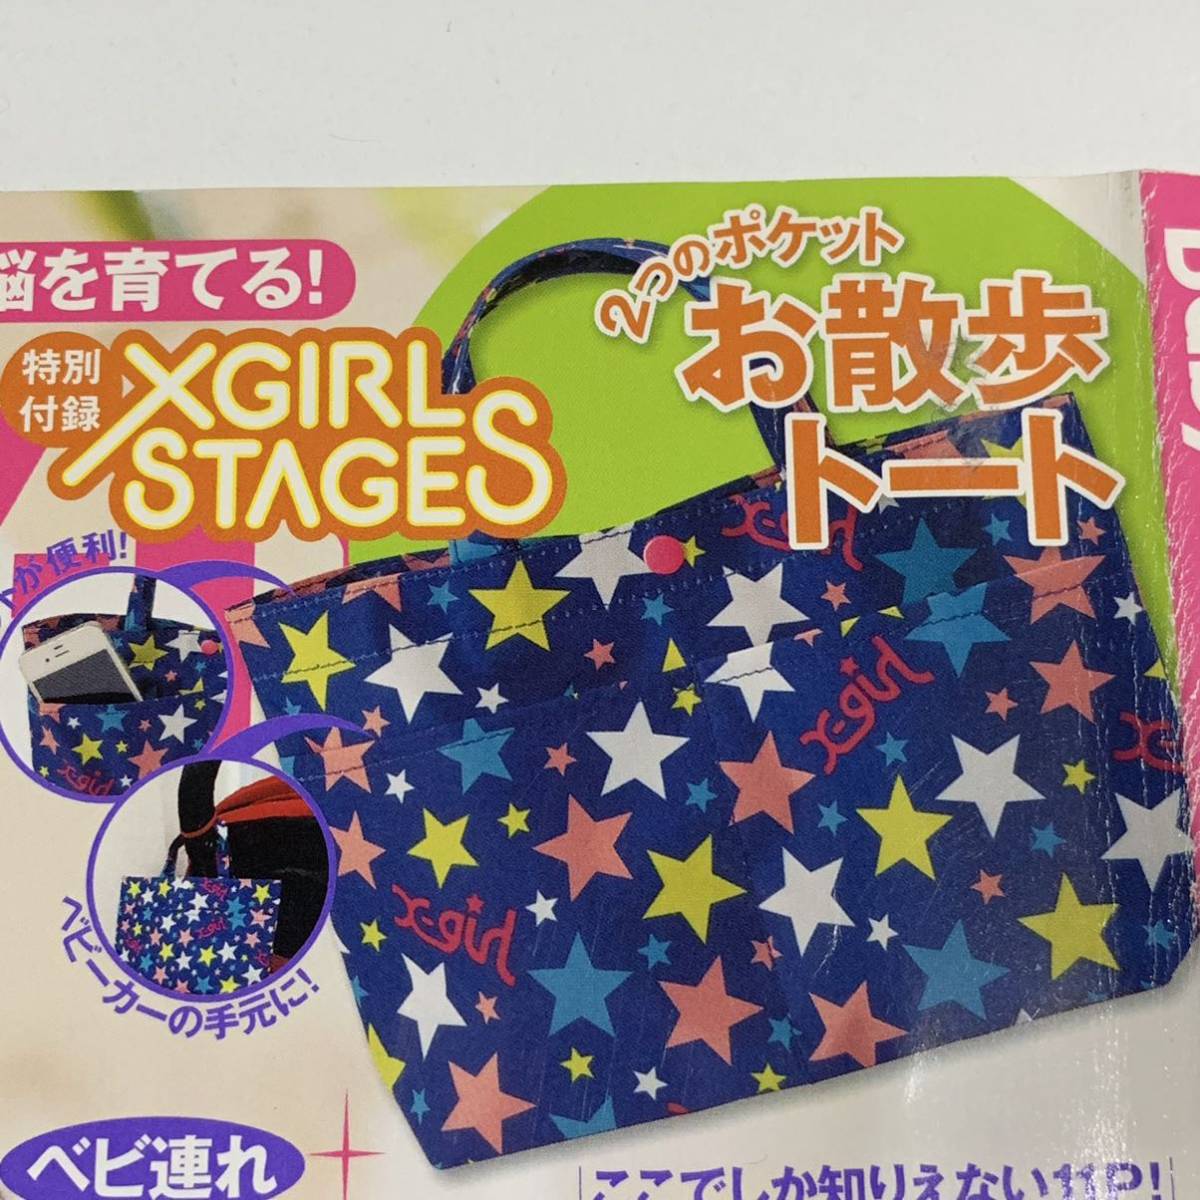  без коробки стоимость доставки 120 иен ~[ не использовался хранение товар ]x-girl stages W карман есть Mini большая сумка Baby-mobebimo X-girl stage s2014 год весна лето номер дополнение 